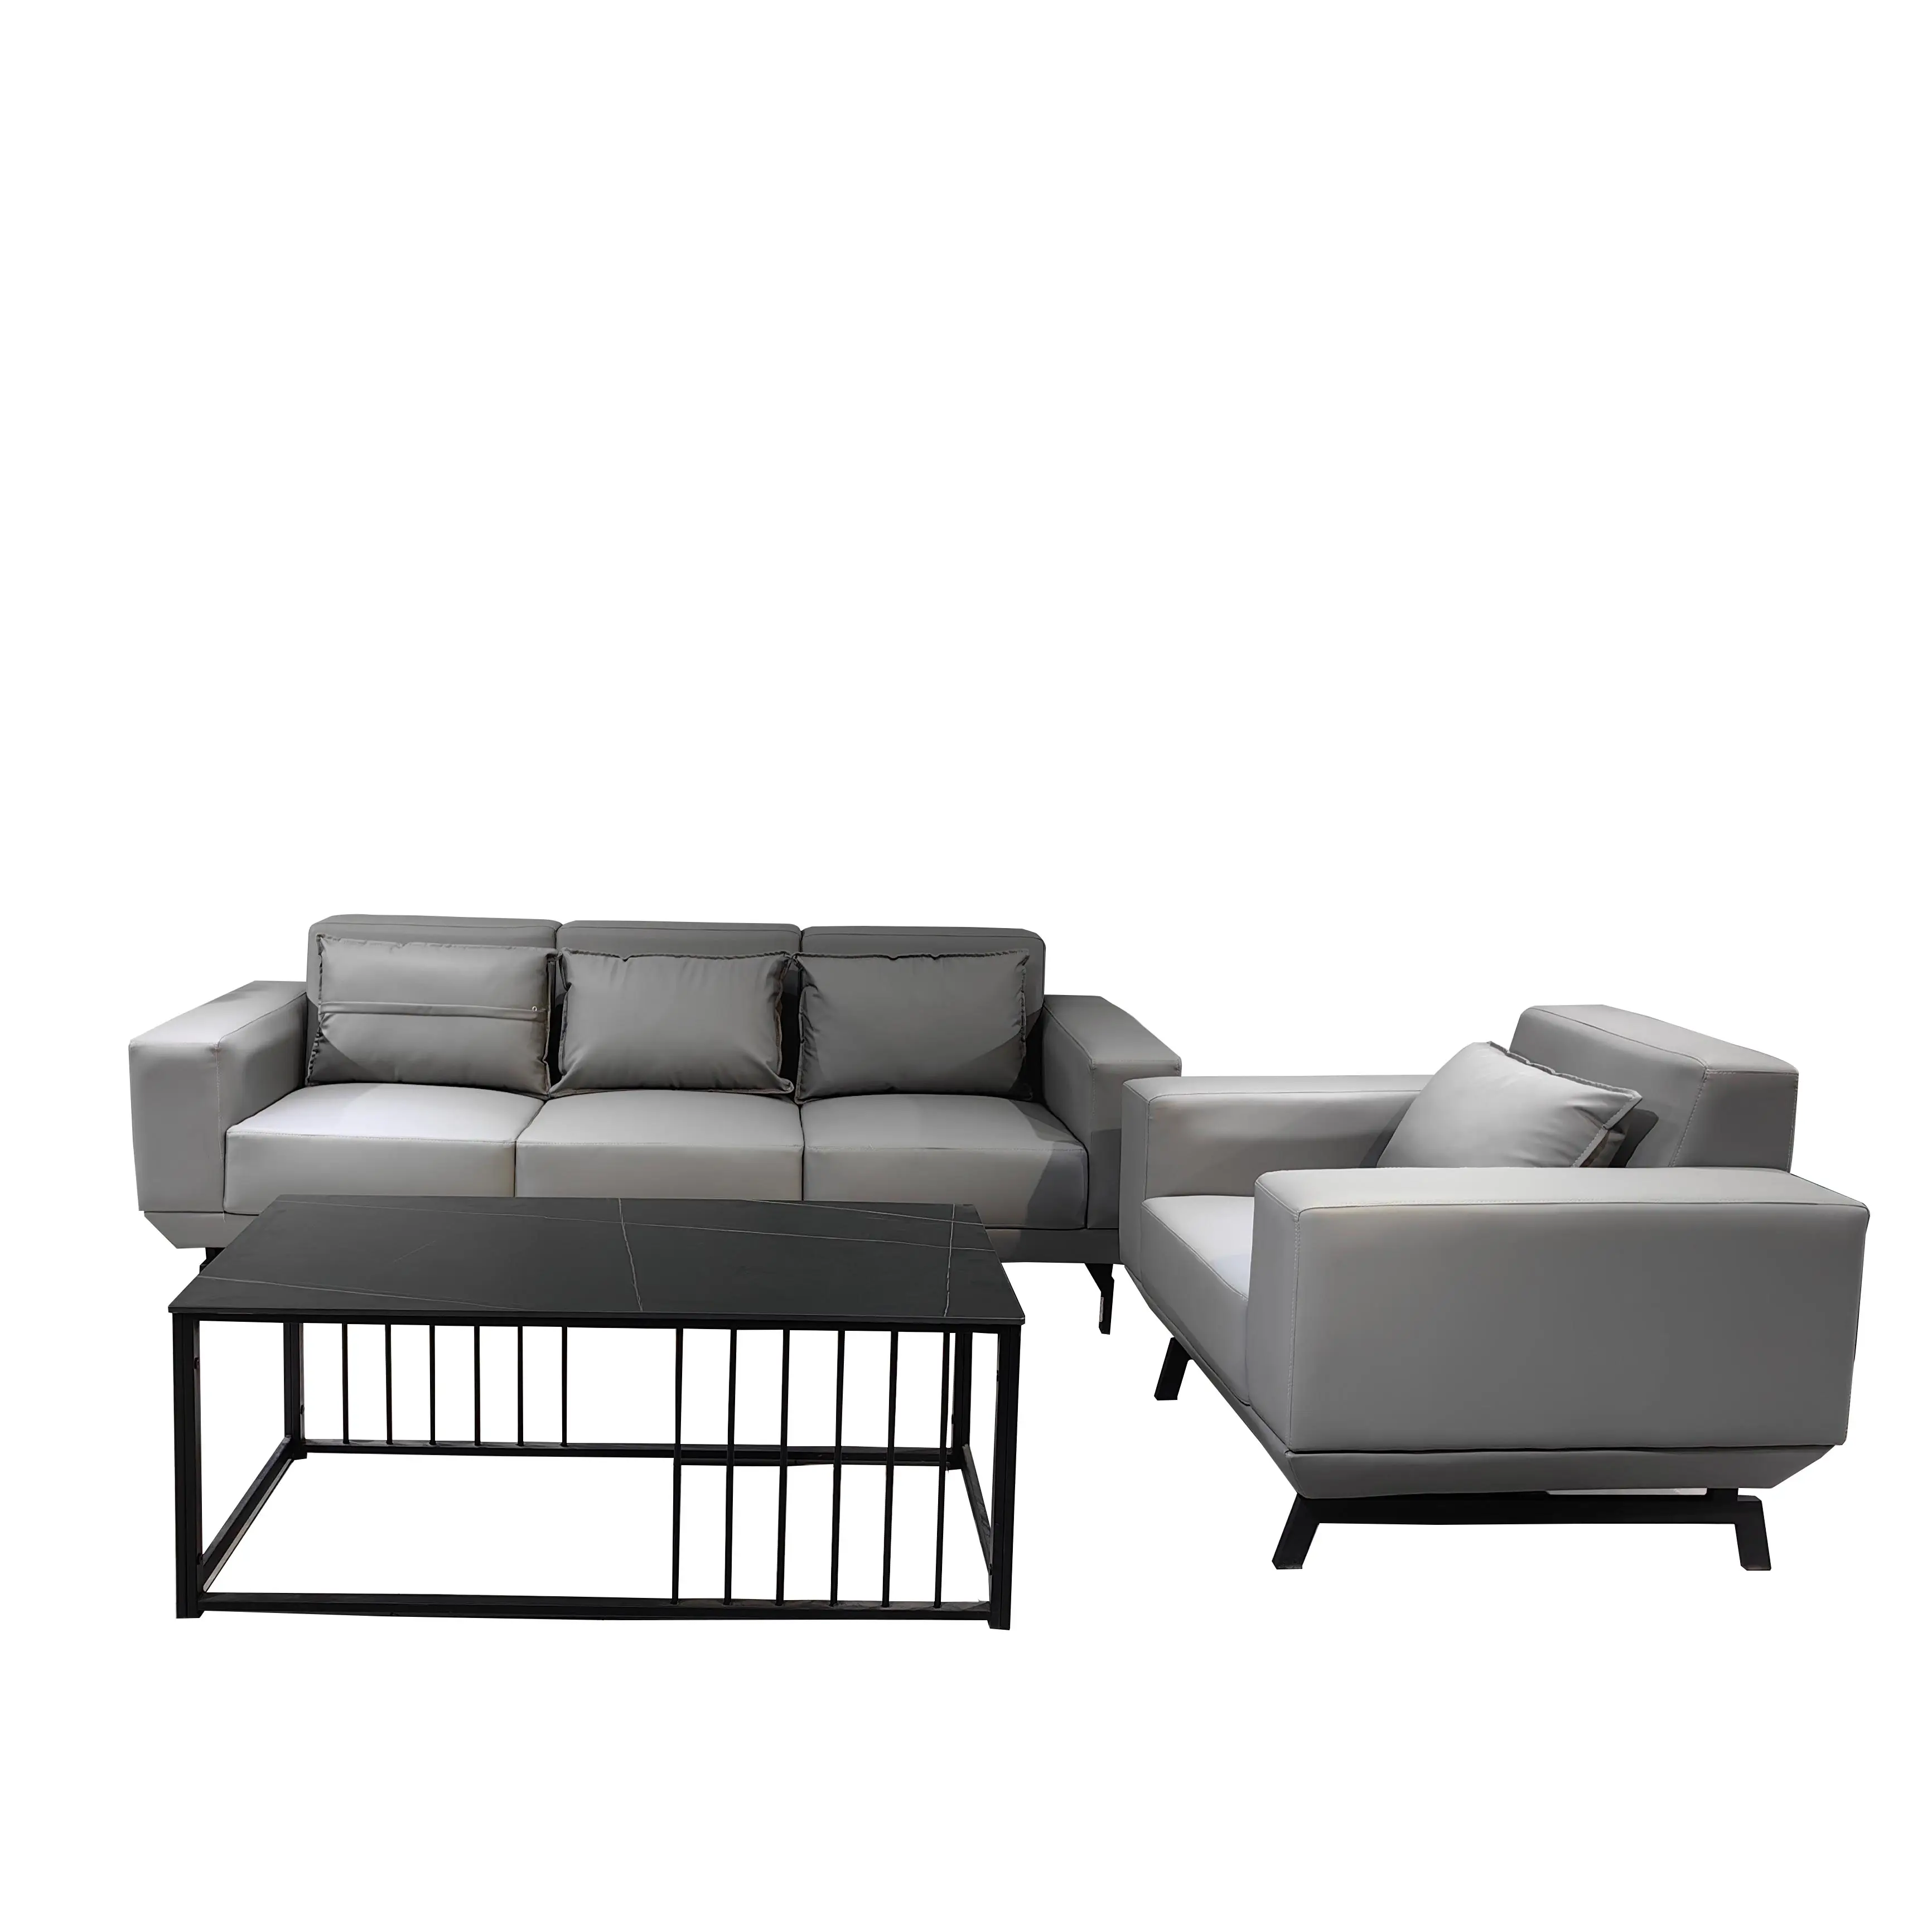 Fabrik Direkt verkauf von Familien Bankettsaal Pu Material Kombination Sofa Cut Set